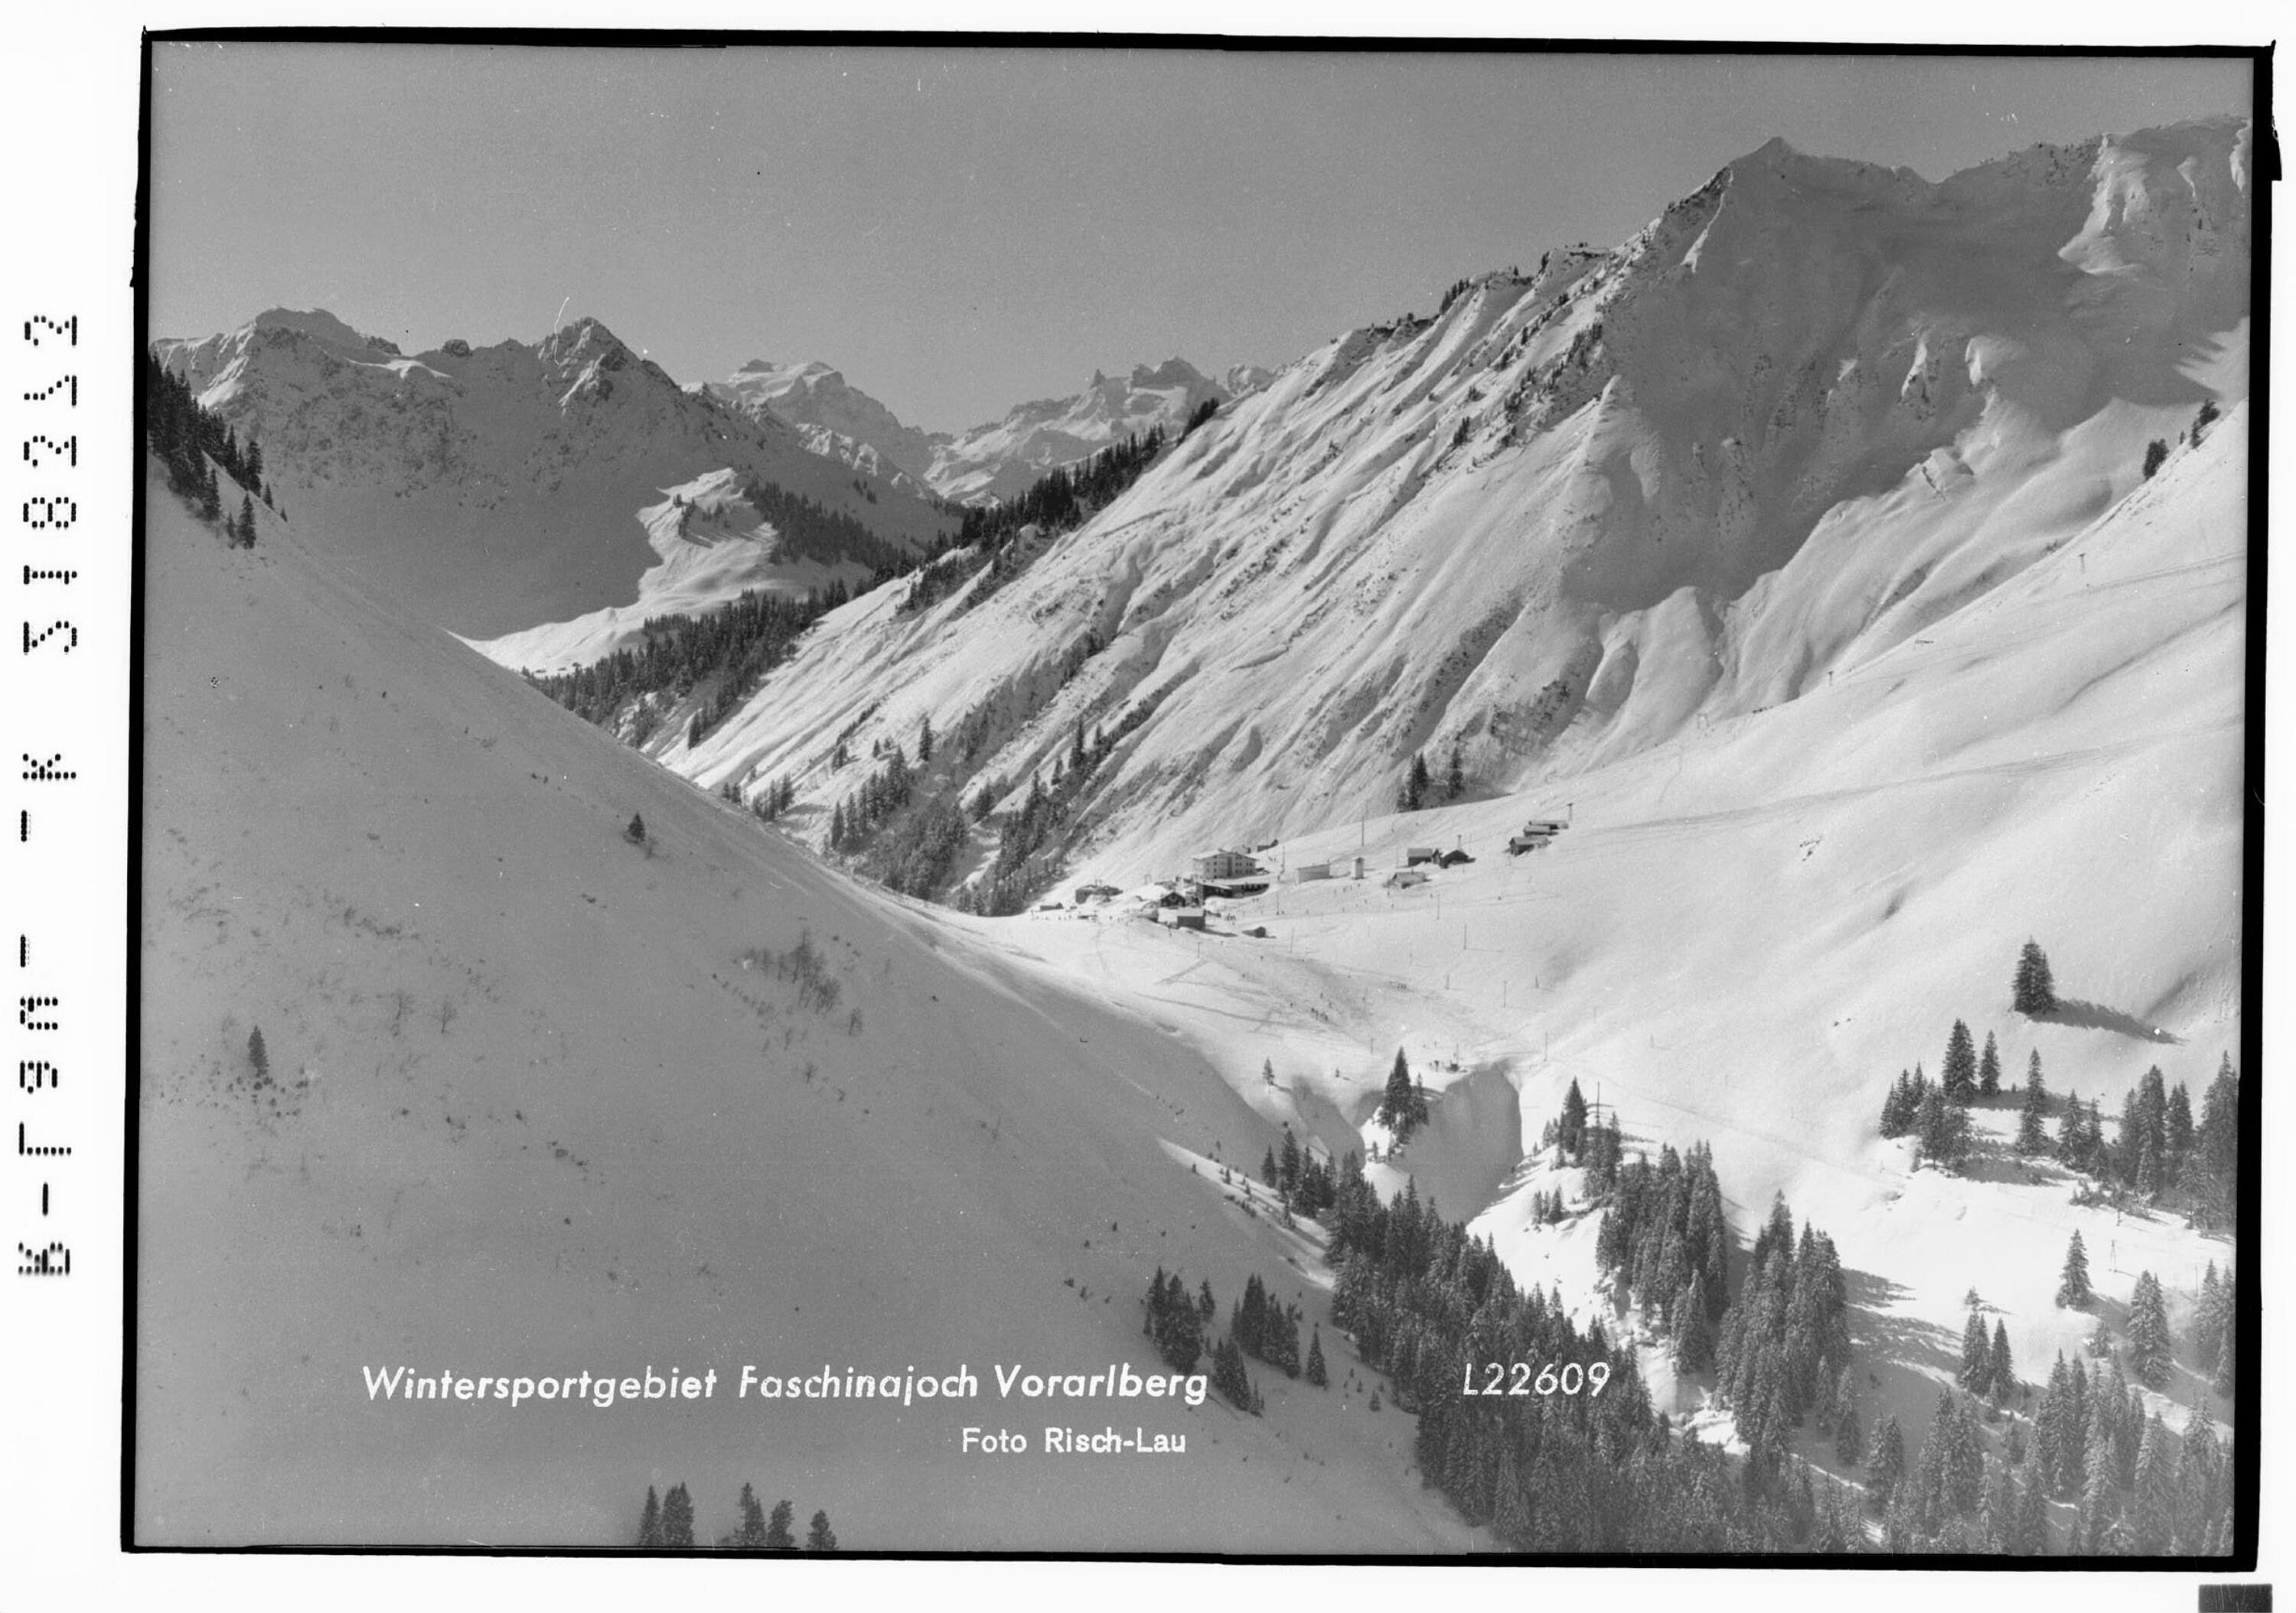 Wintersportgebiet Faschinajoch Vorarlberg></div>


    <hr>
    <div class=